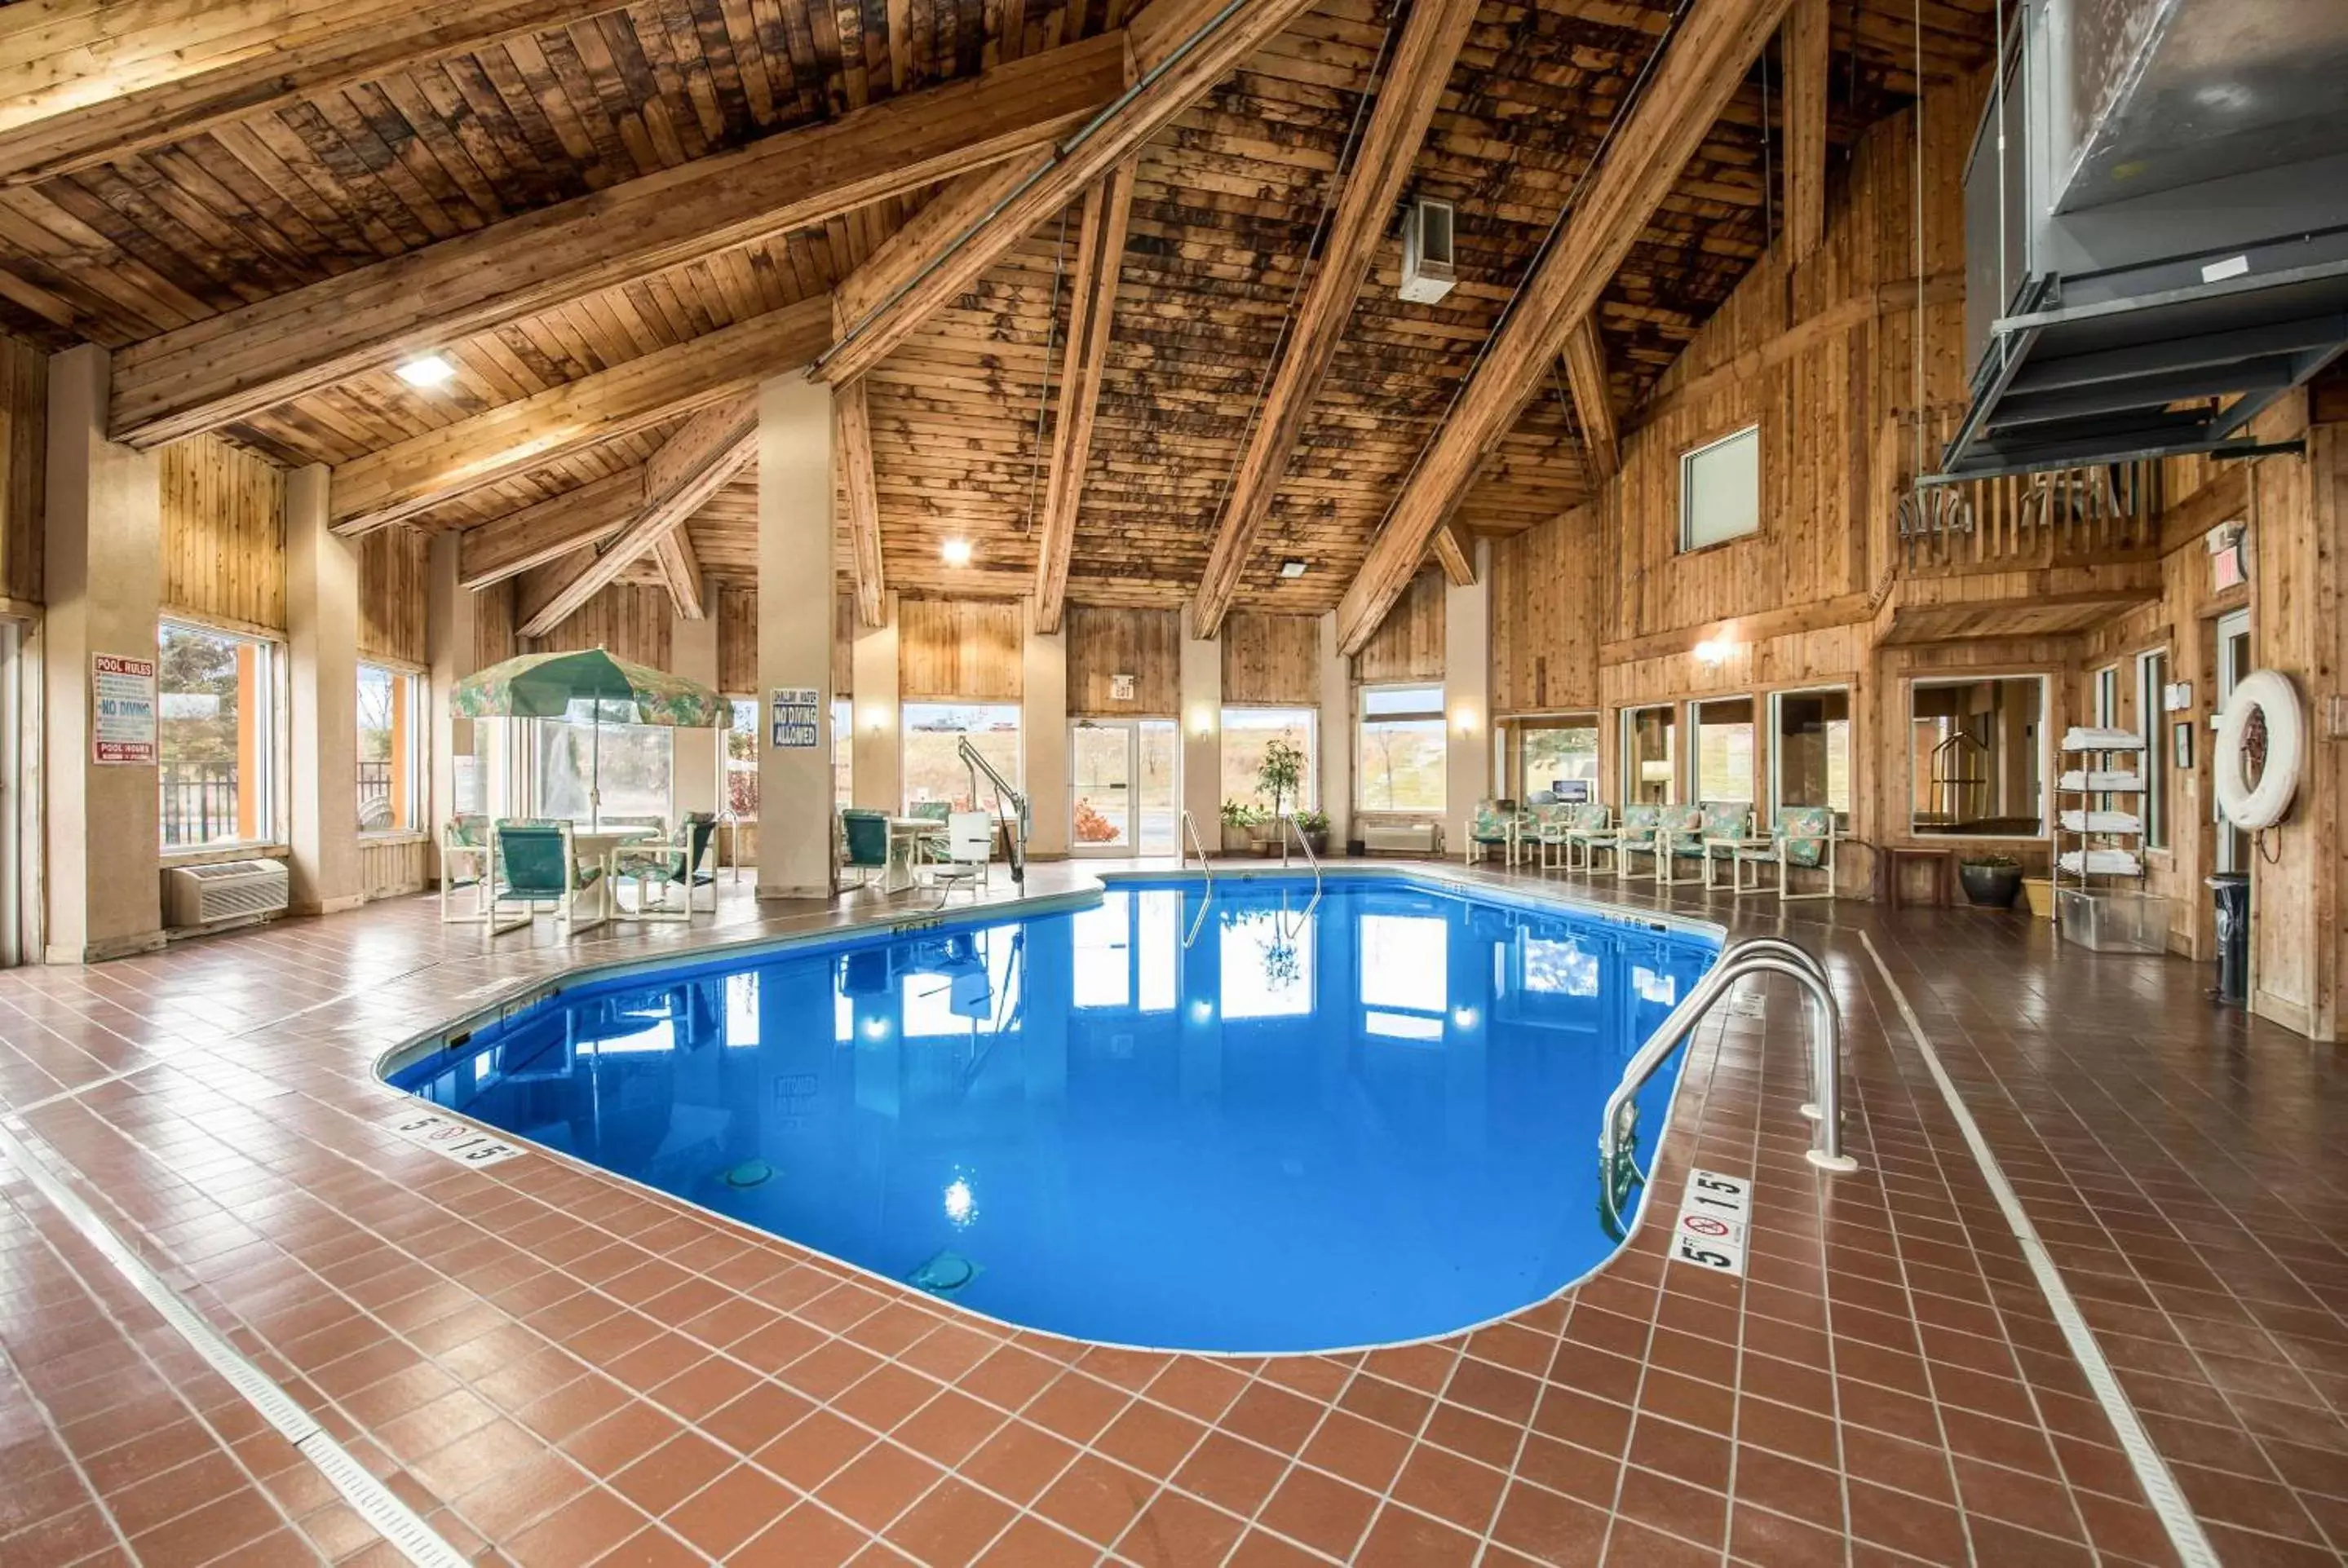 On site, Swimming Pool in Quality Inn & Suites Menomonie